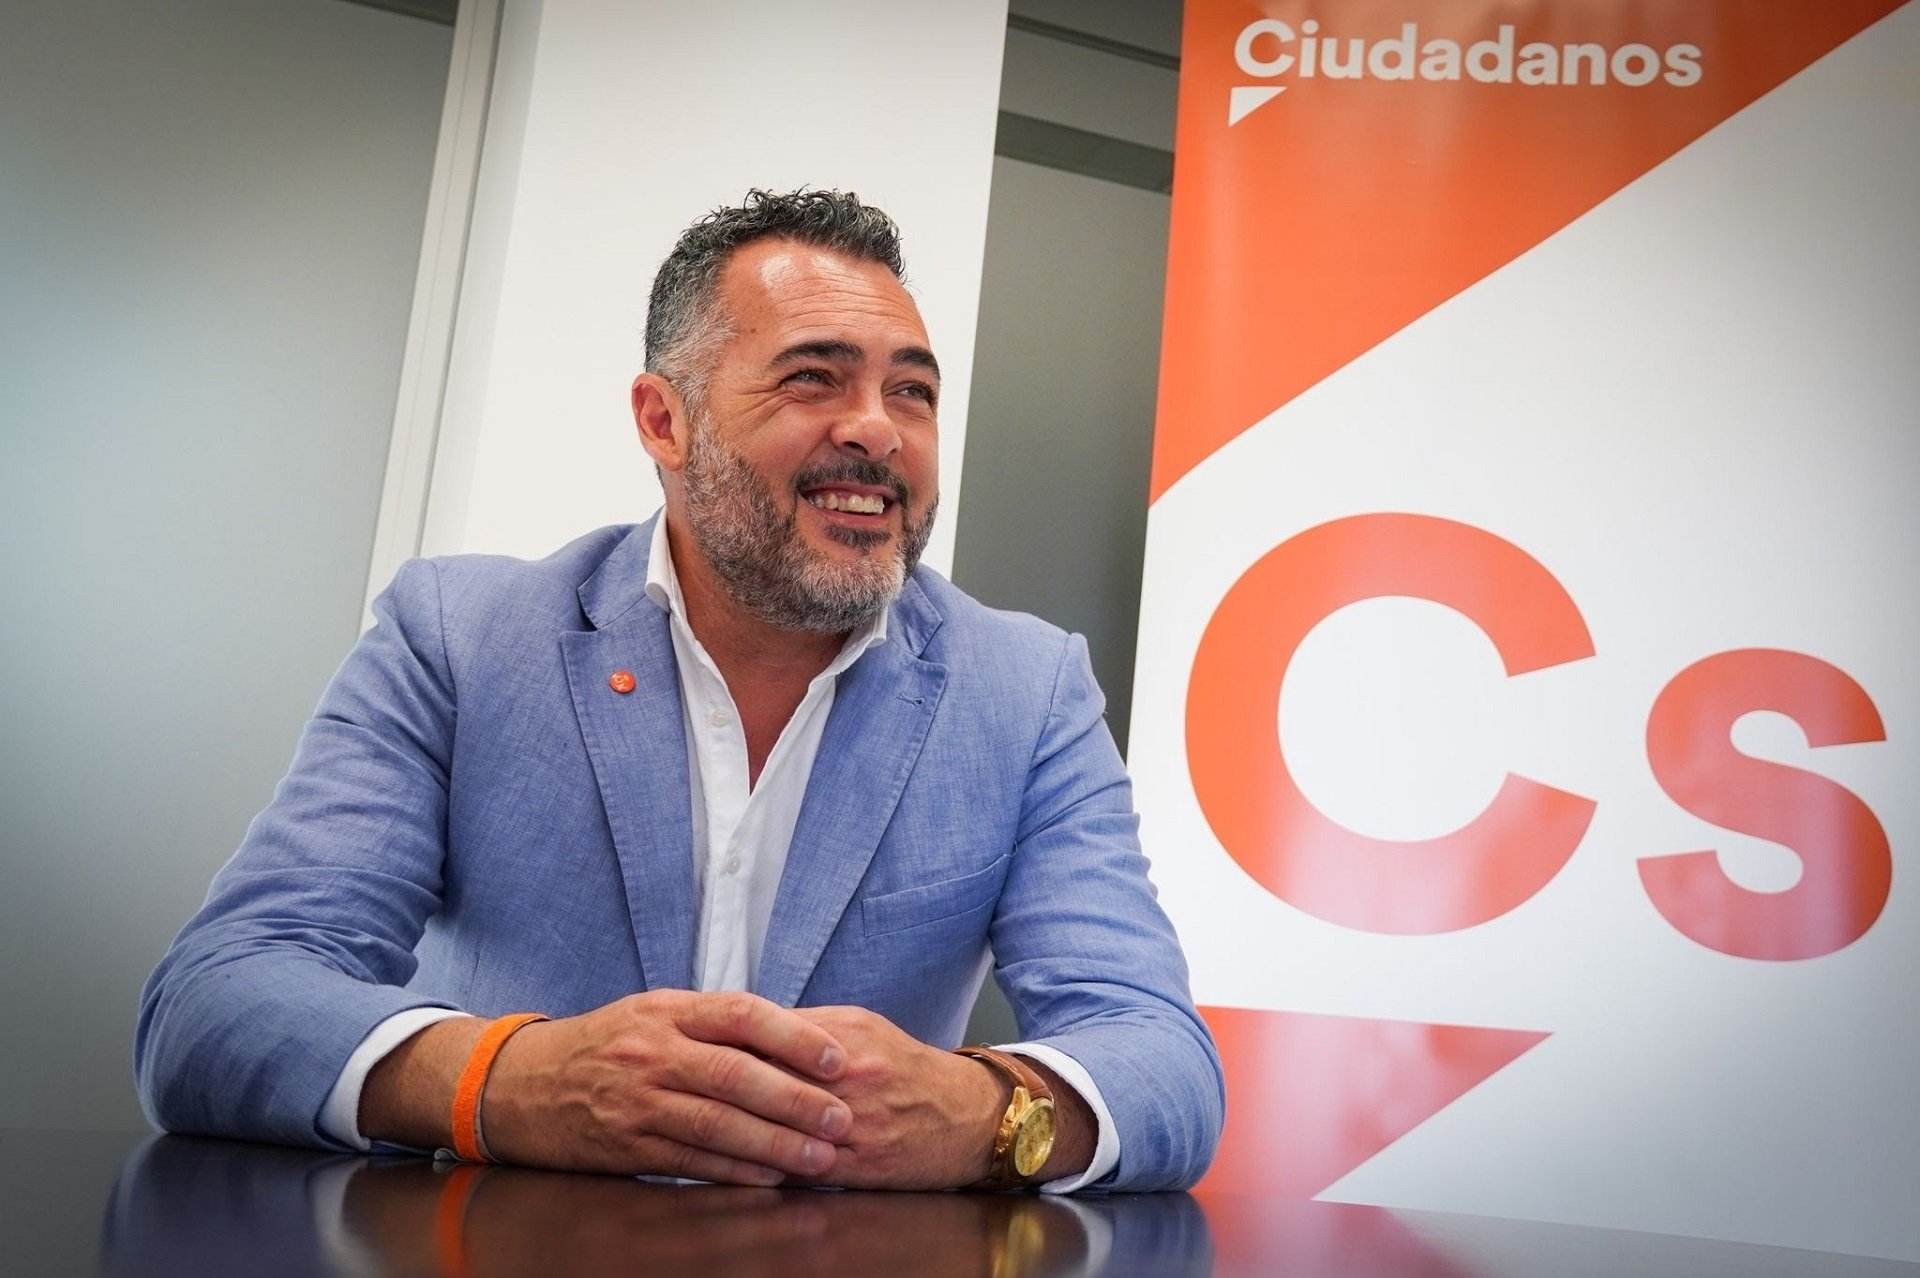 Segueix el declivi de Ciutadans: a Andalusia, en mans d'una gestora després de la desfeta electoral